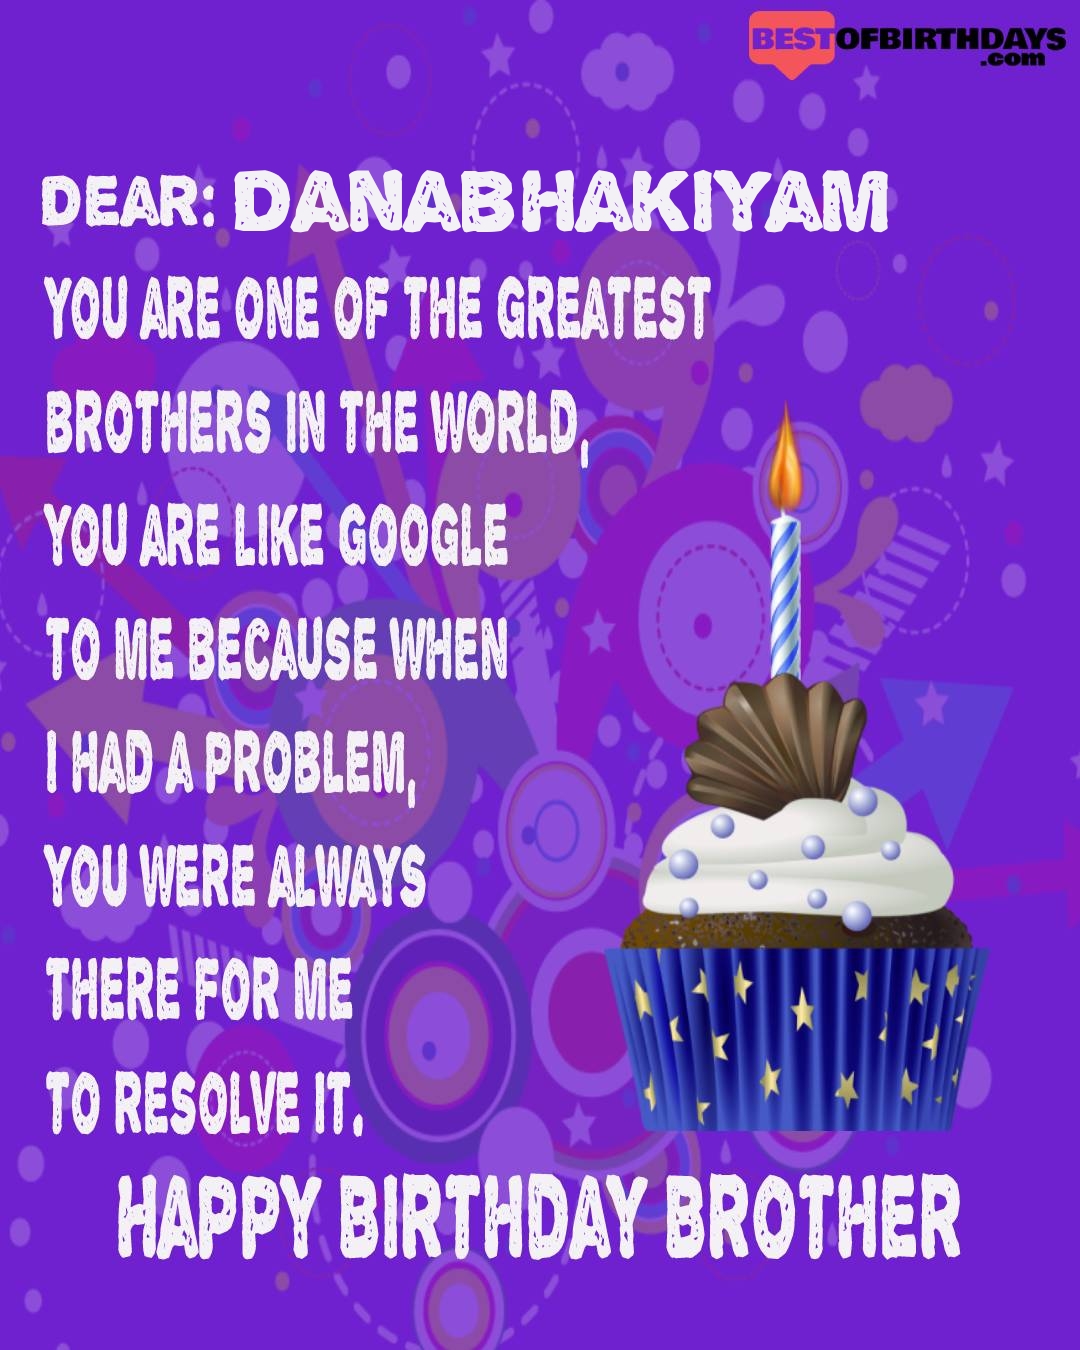 Happy birthday danabhakiyam bhai brother bro